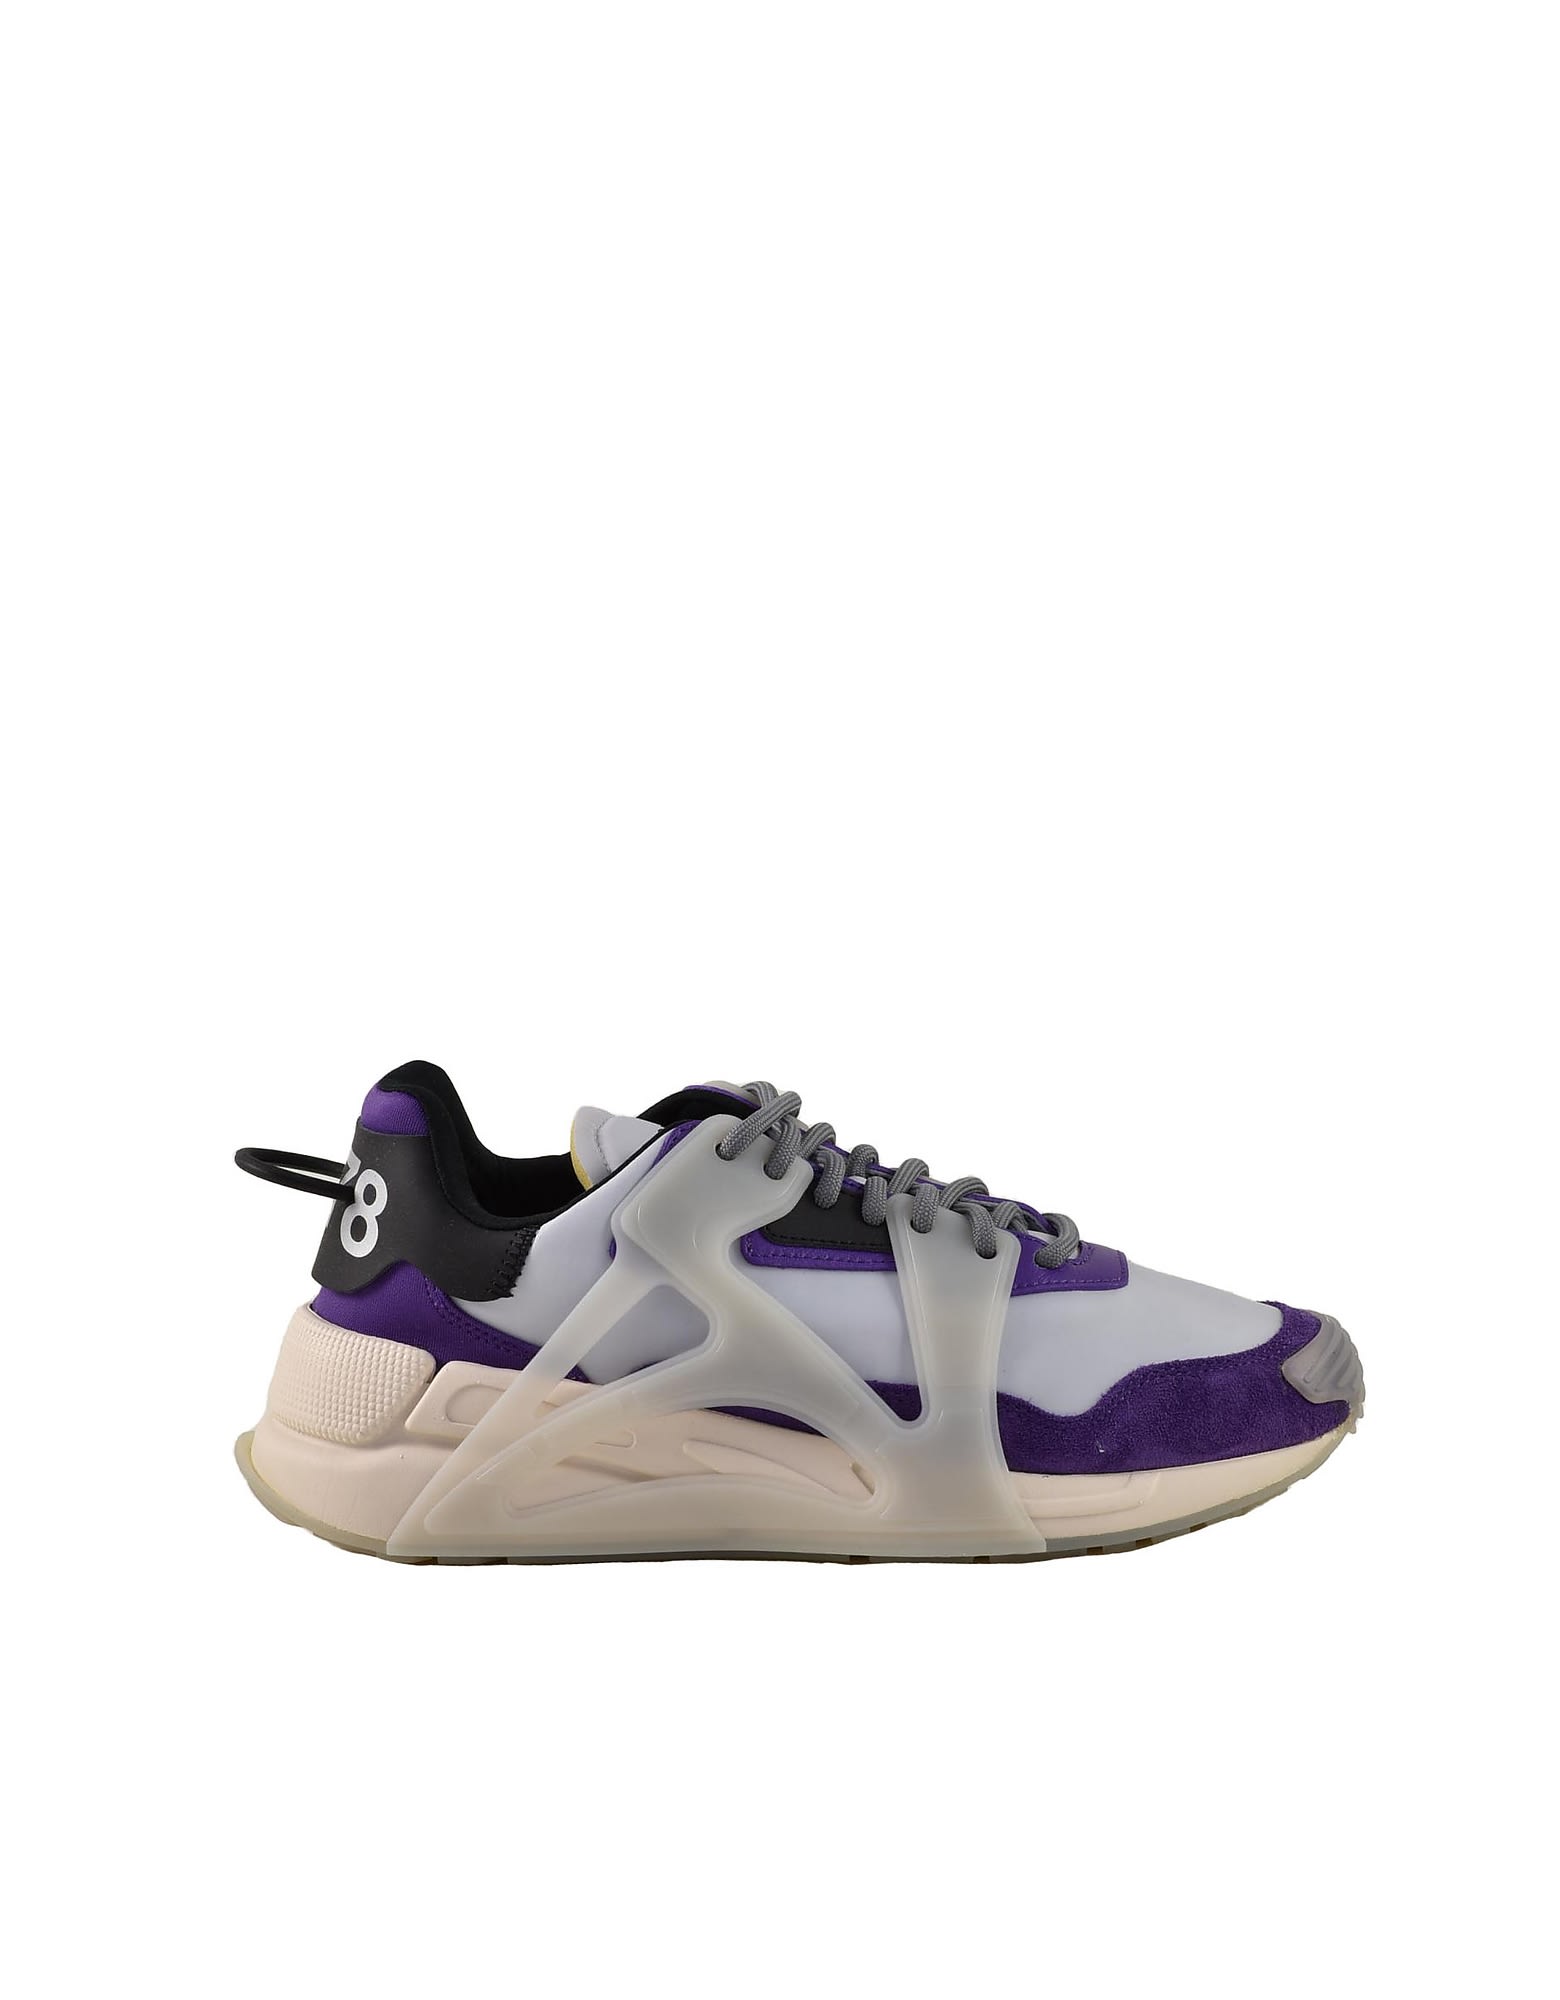 Diesel Mens White / Purple Sneakers